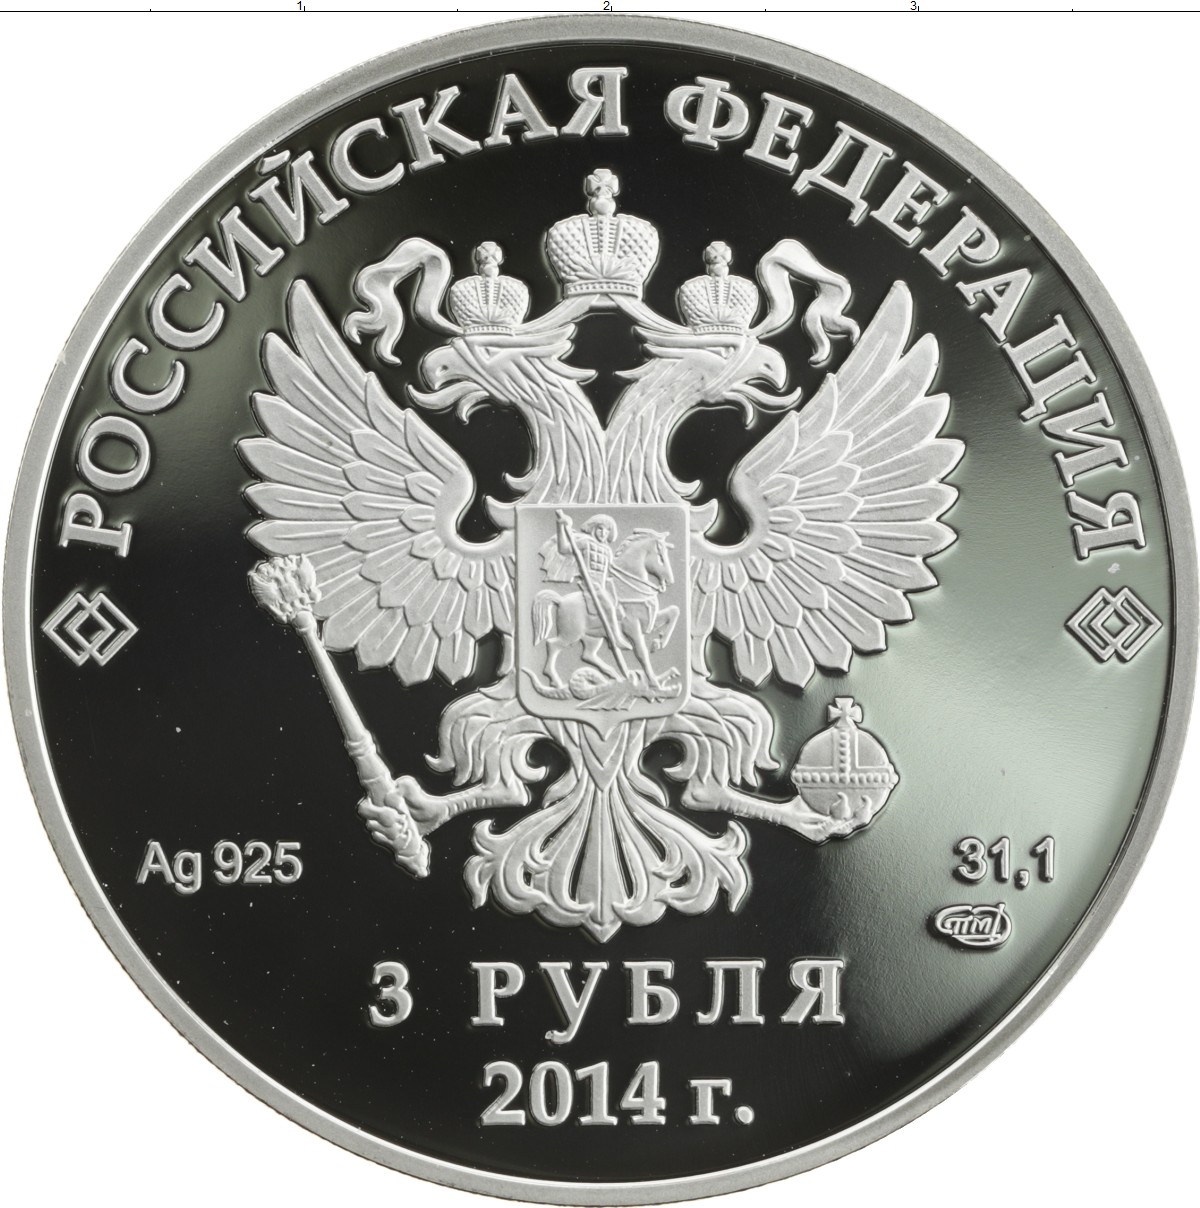 80 рублей россии. Монета 3 рубля. 3 Рубля монета Россия. Монета 3 рубля серебро. 3 Рубля монета 2014.